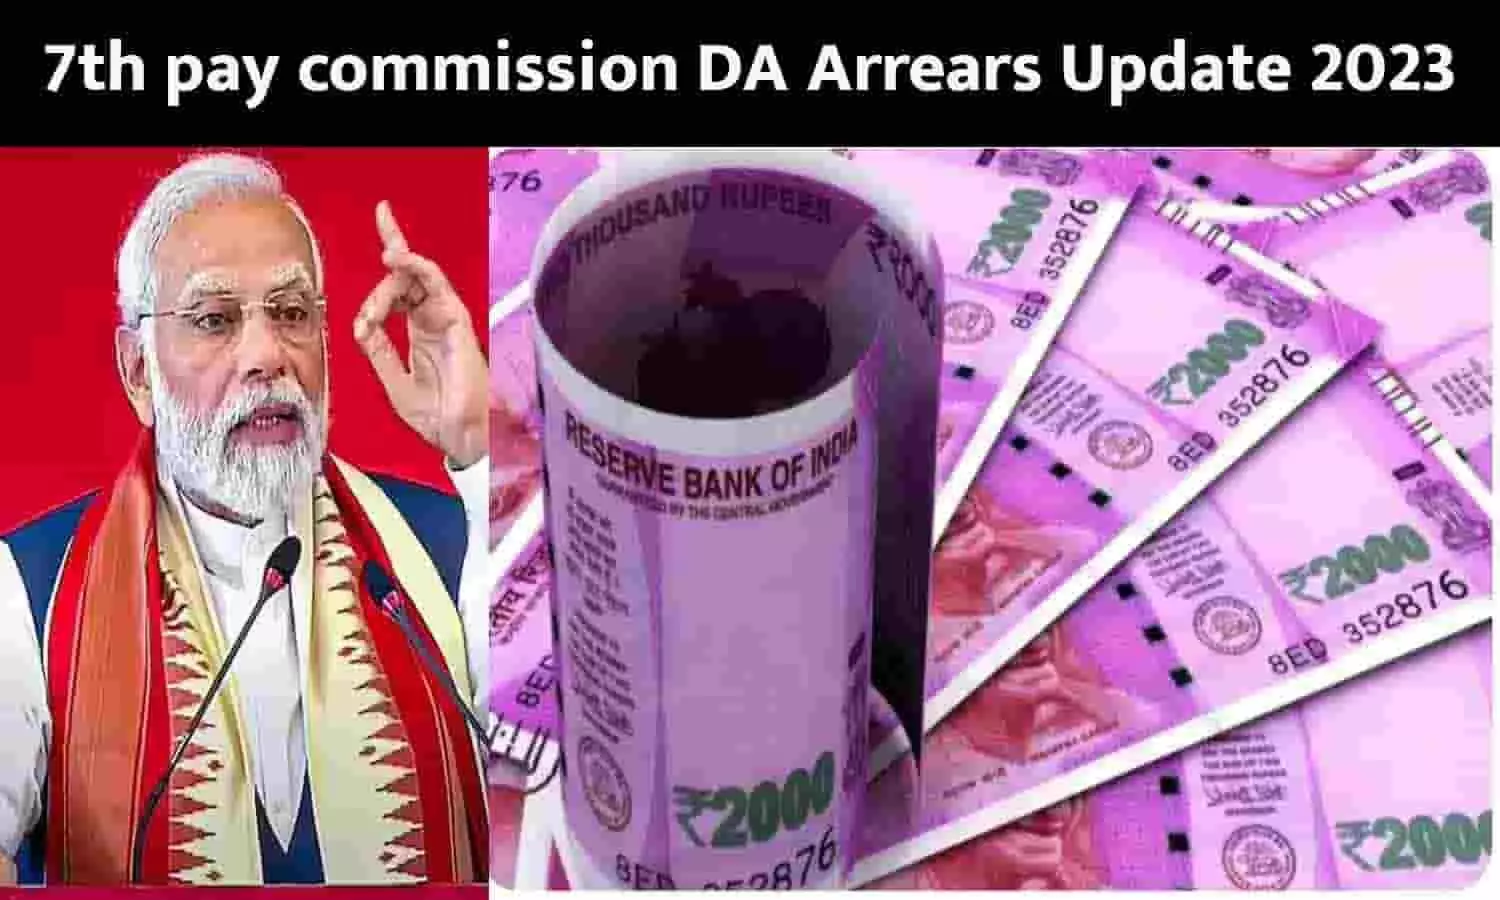 7th pay commission DA Arrears Update: 18 महीने के DA Arrear को लेकर सरकार ने दी गुड न्यूज़, कंफर्म हुई डेट - जानें कब मिलेगा पैसा?